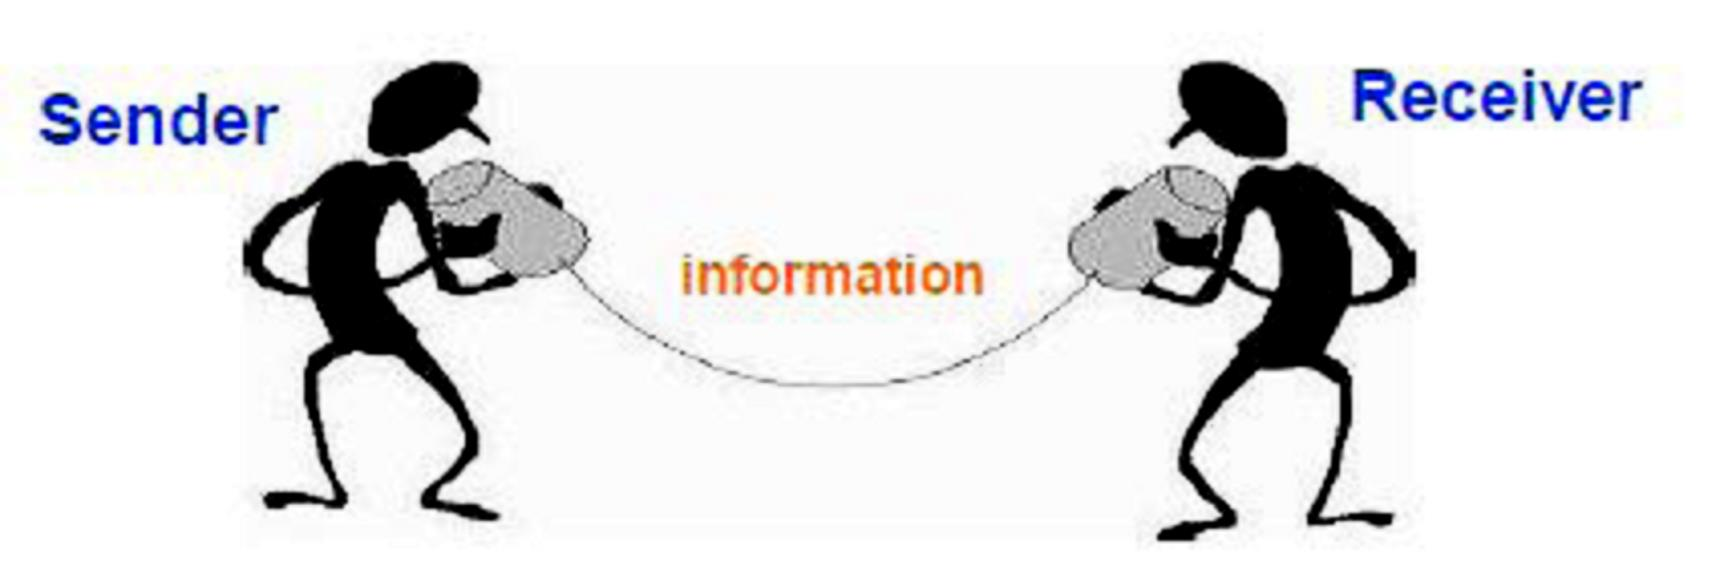 Επικοινωνία;;; Επικοινωνία διαμοιρασμός ιδεών και πληροφοριών Γενικά, επικοινωνία είναι οτιδήποτε (όχι μόνο πληροφορία) που στέλνεται και λαμβάνεται Επικοινωνία = η διαδικασία μεταφοράς